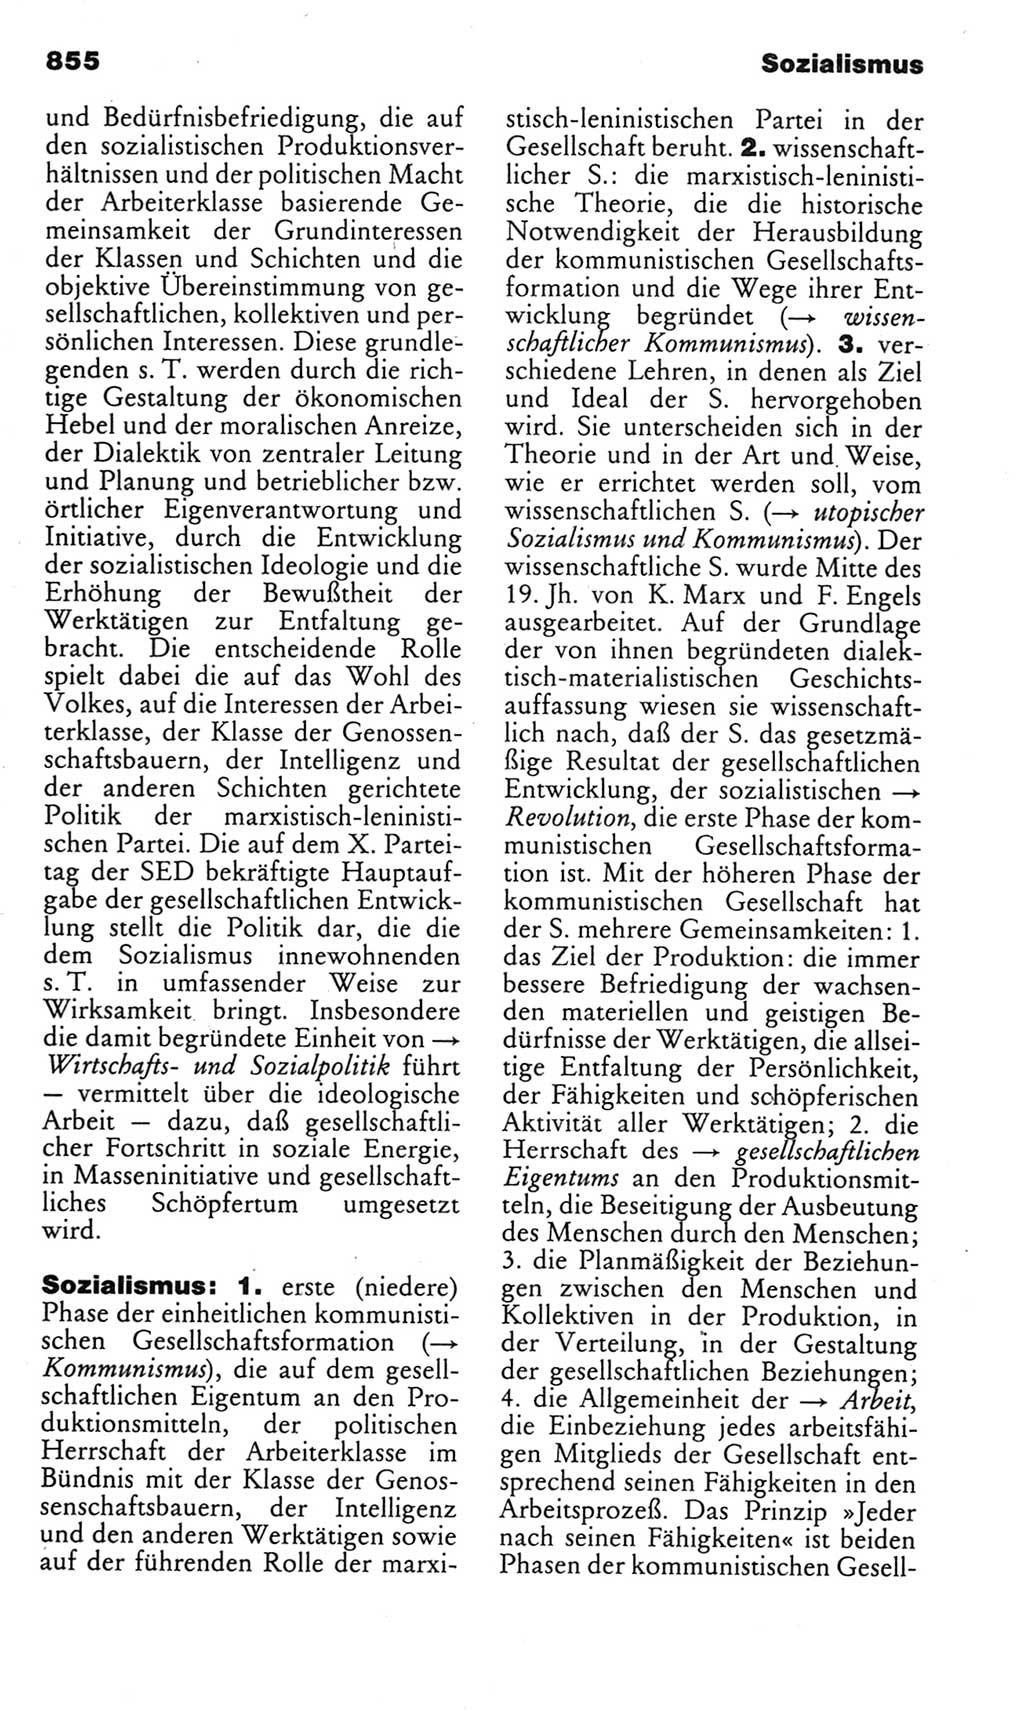 Kleines politisches Wörterbuch [Deutsche Demokratische Republik (DDR)] 1985, Seite 855 (Kl. pol. Wb. DDR 1985, S. 855)